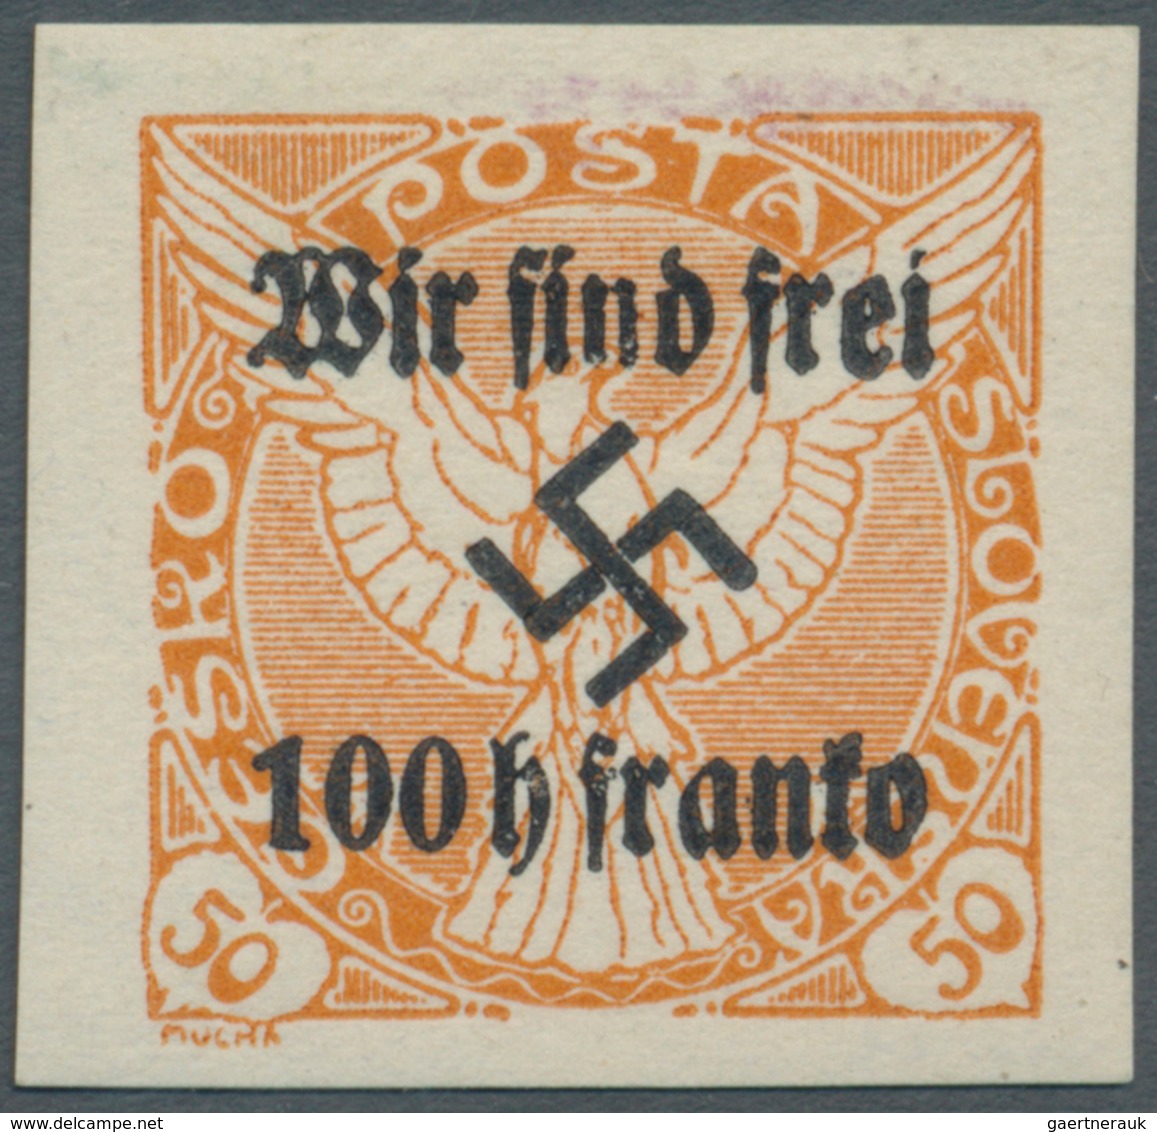 Sudetenland - Rumburg: 1938, 100 H. Auf 50 H. Zeitungsmarke Orange, Postfrisch, Kabinett, Signiert M - Région Des Sudètes